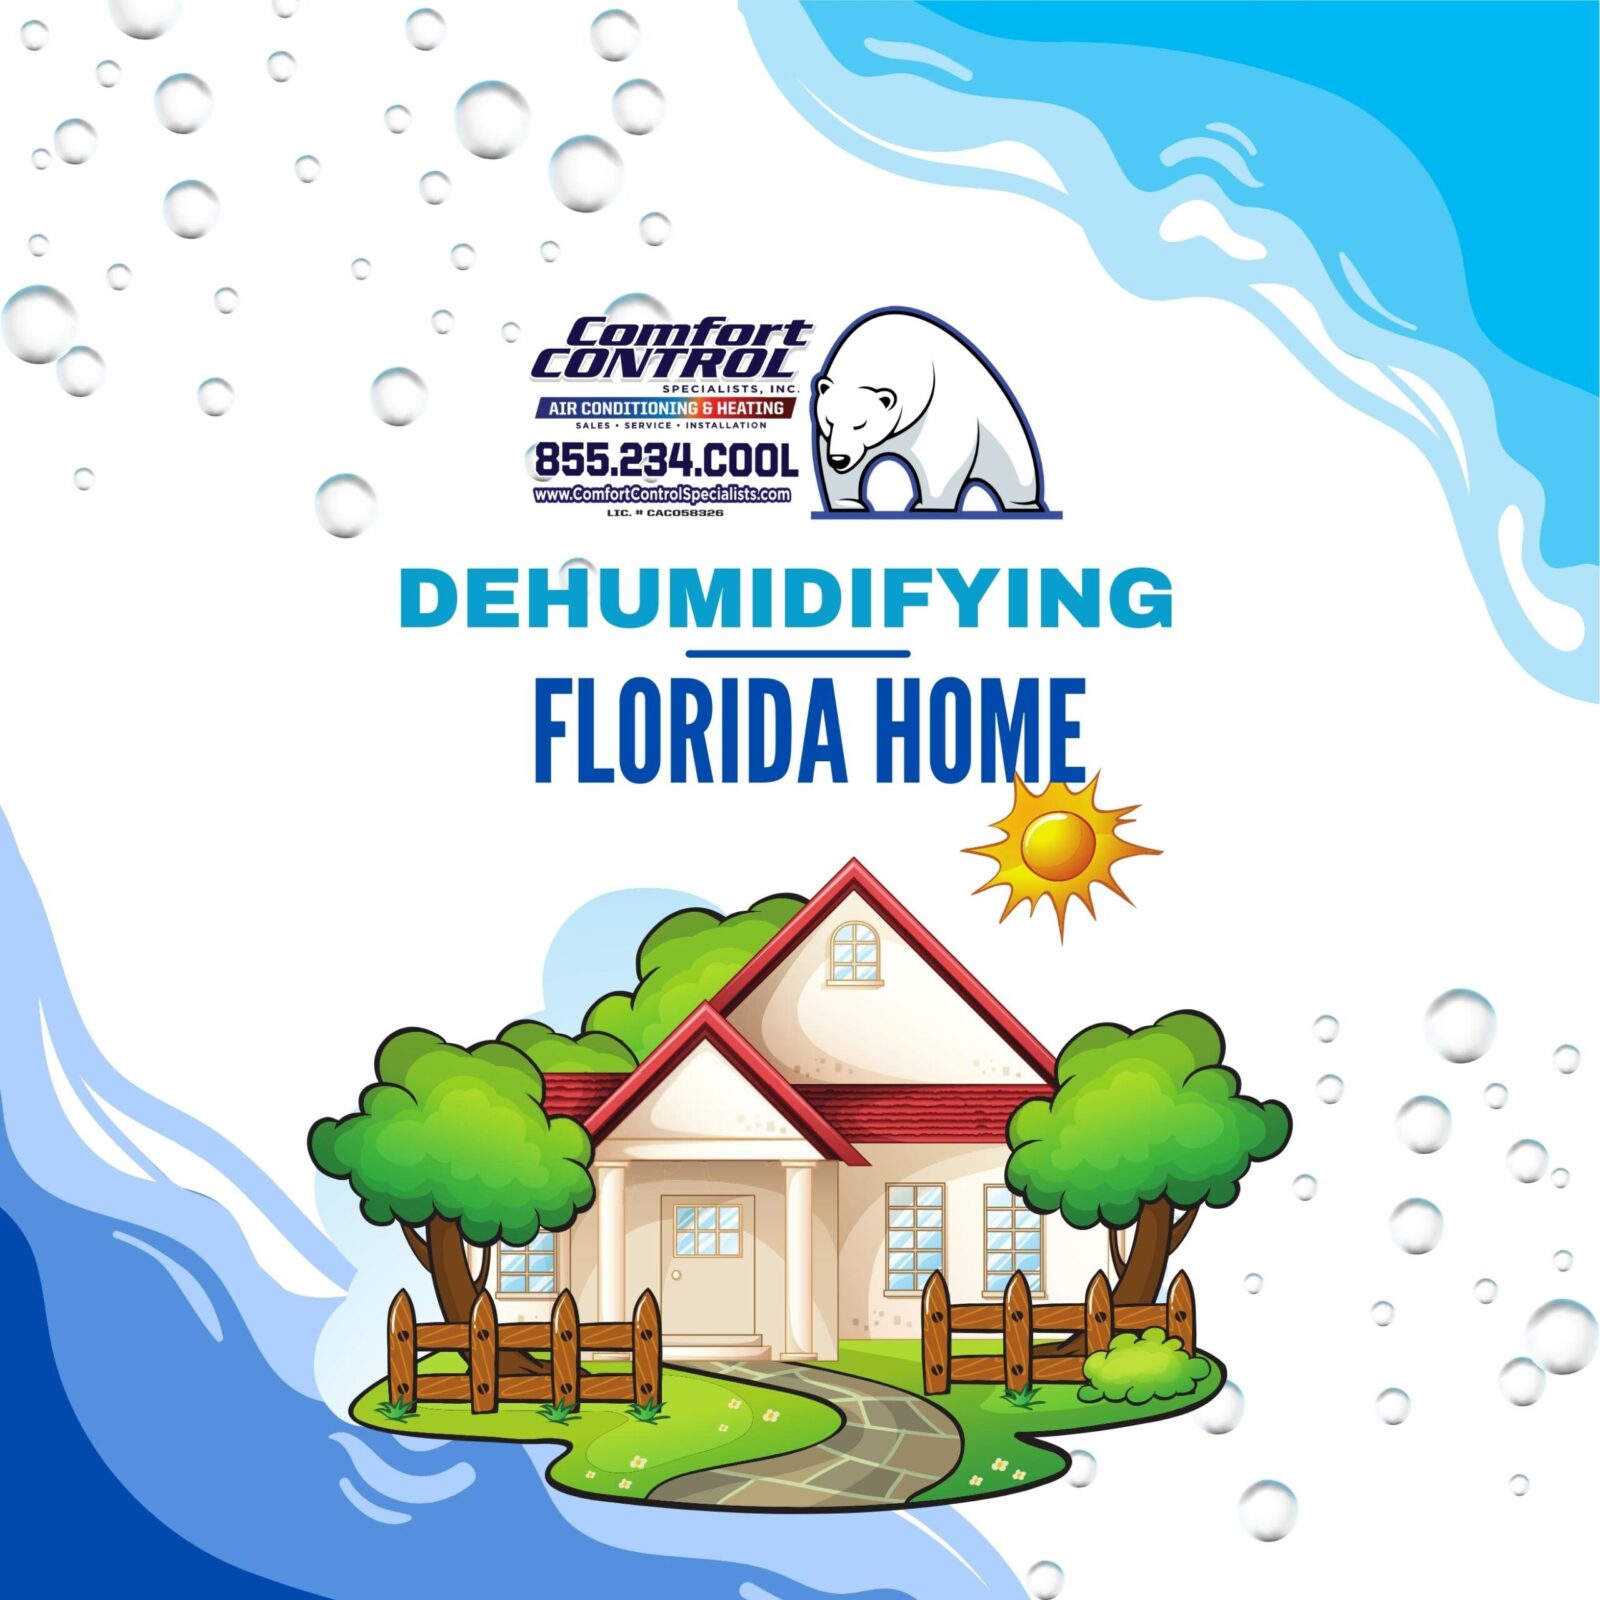 Dehumidifying Your Florida Home